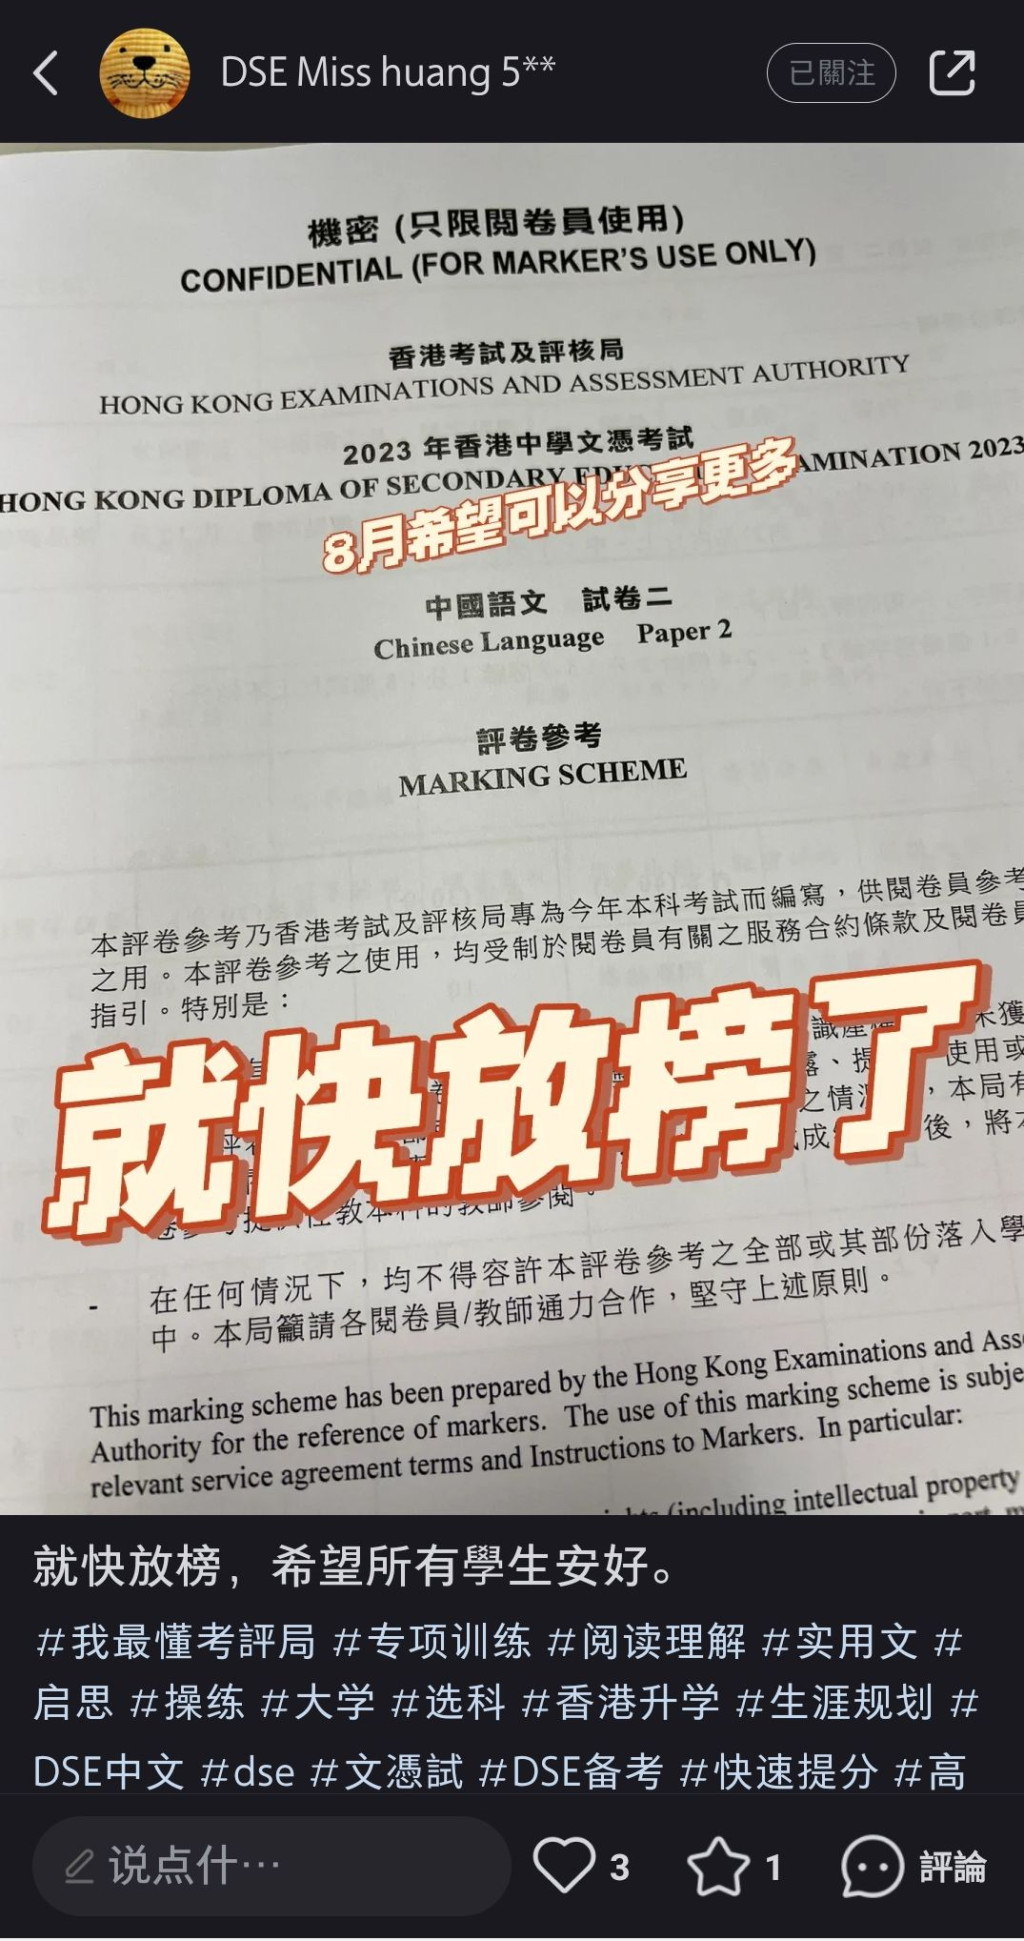 有自称「中文科阅卷员」于社交平台「小红书」上载印有「2023年DSE 机密（只限阅卷员使用）」的批改参考文件。网上图片